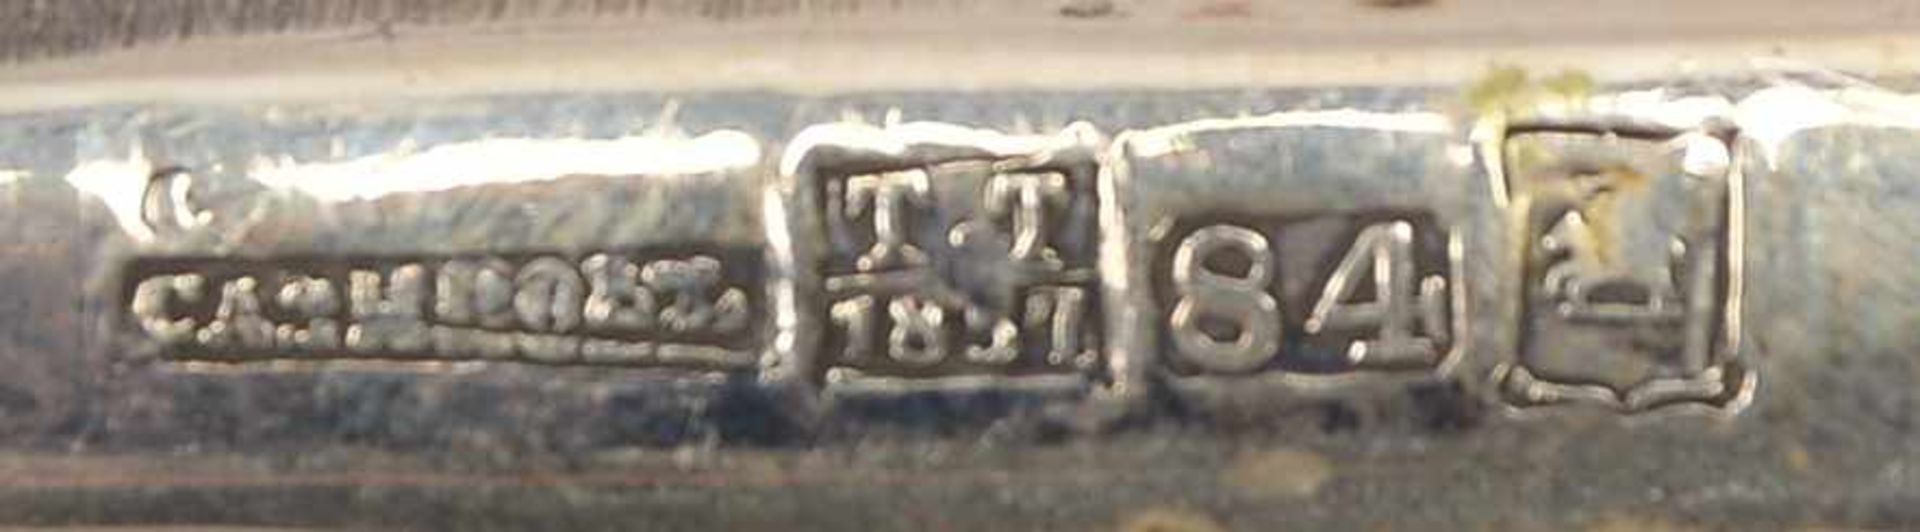 Thora-Zeiger, Russland, antik, Silber/84 Zolotnik, mit Meisterpunze 'TT 1857' und 'Stadtbeschau'; - Bild 5 aus 5